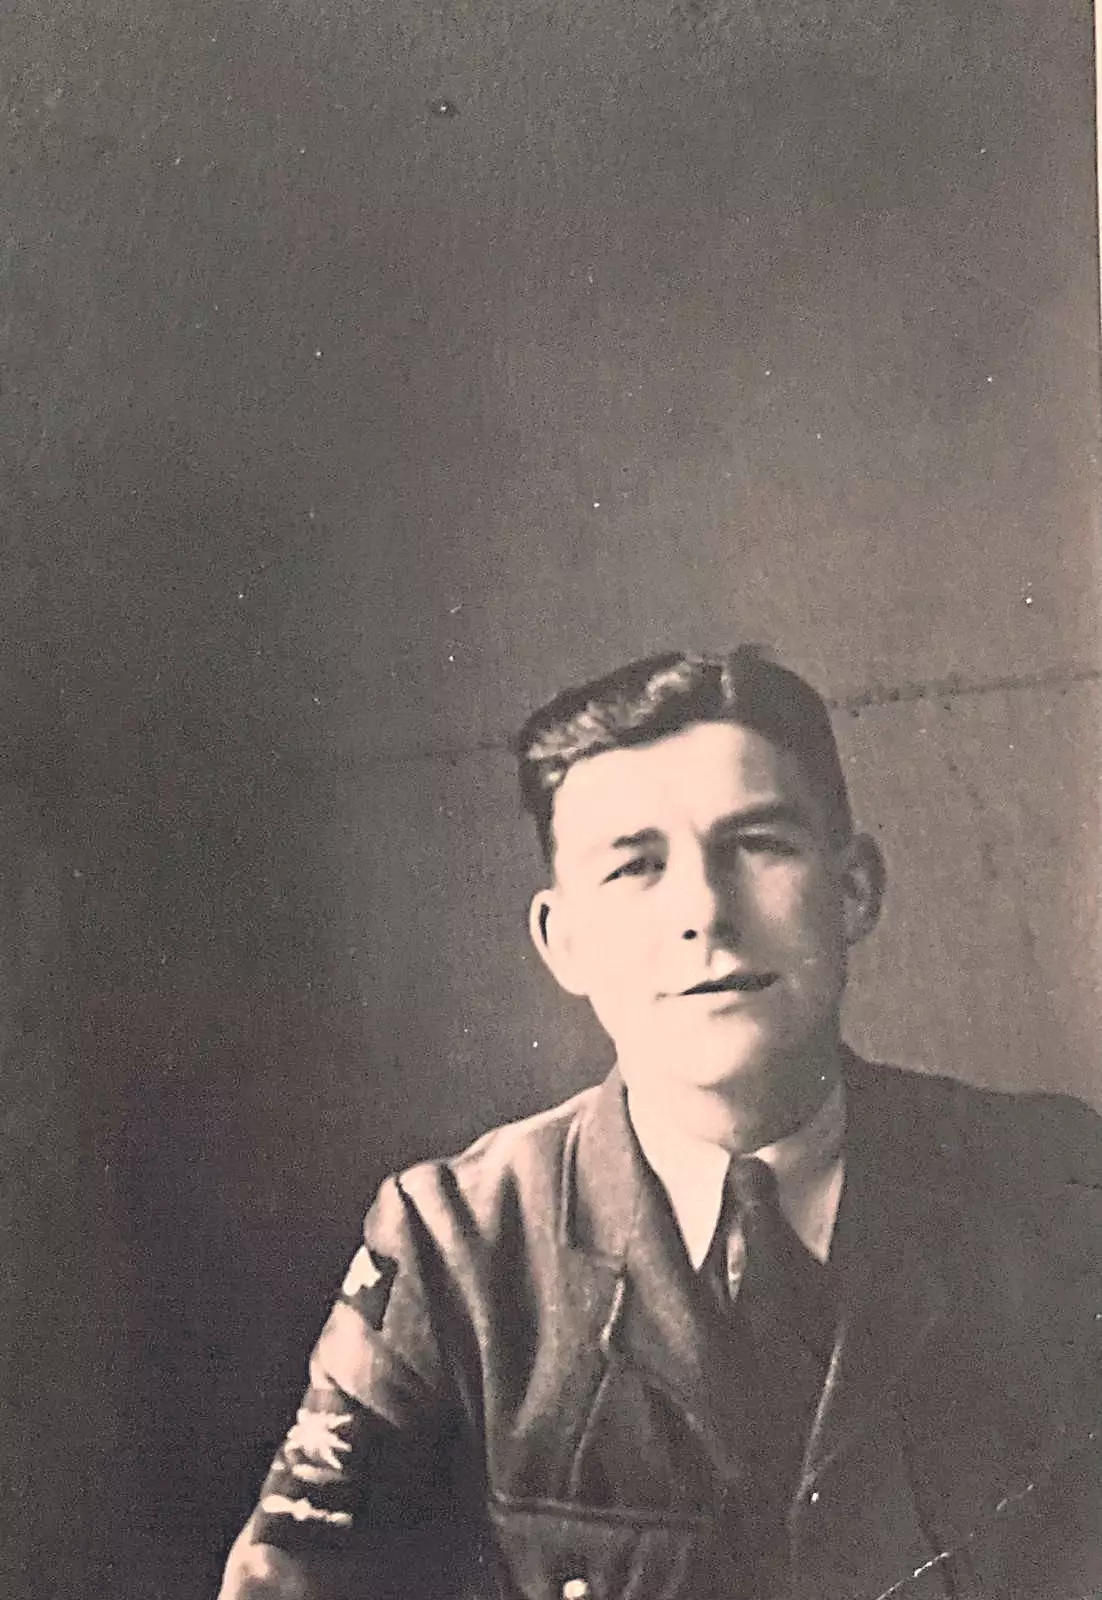 John during World War Two.